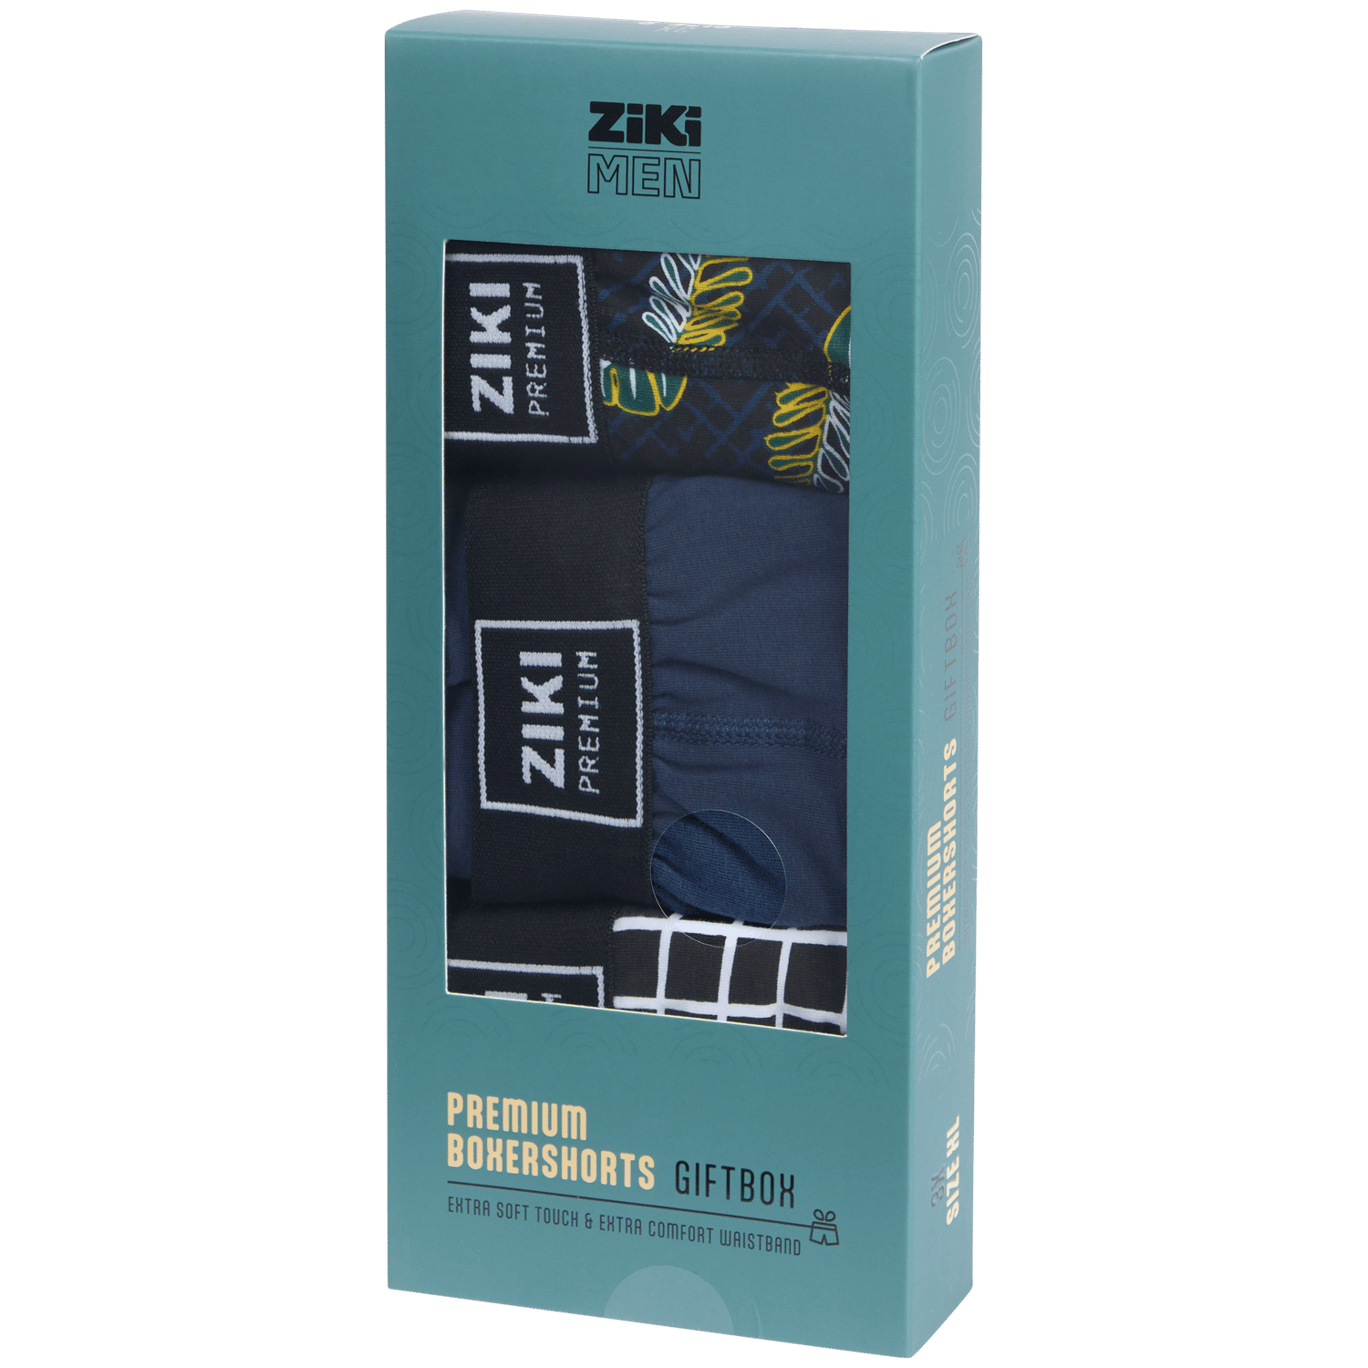 Ziki Men Premium boxershorts